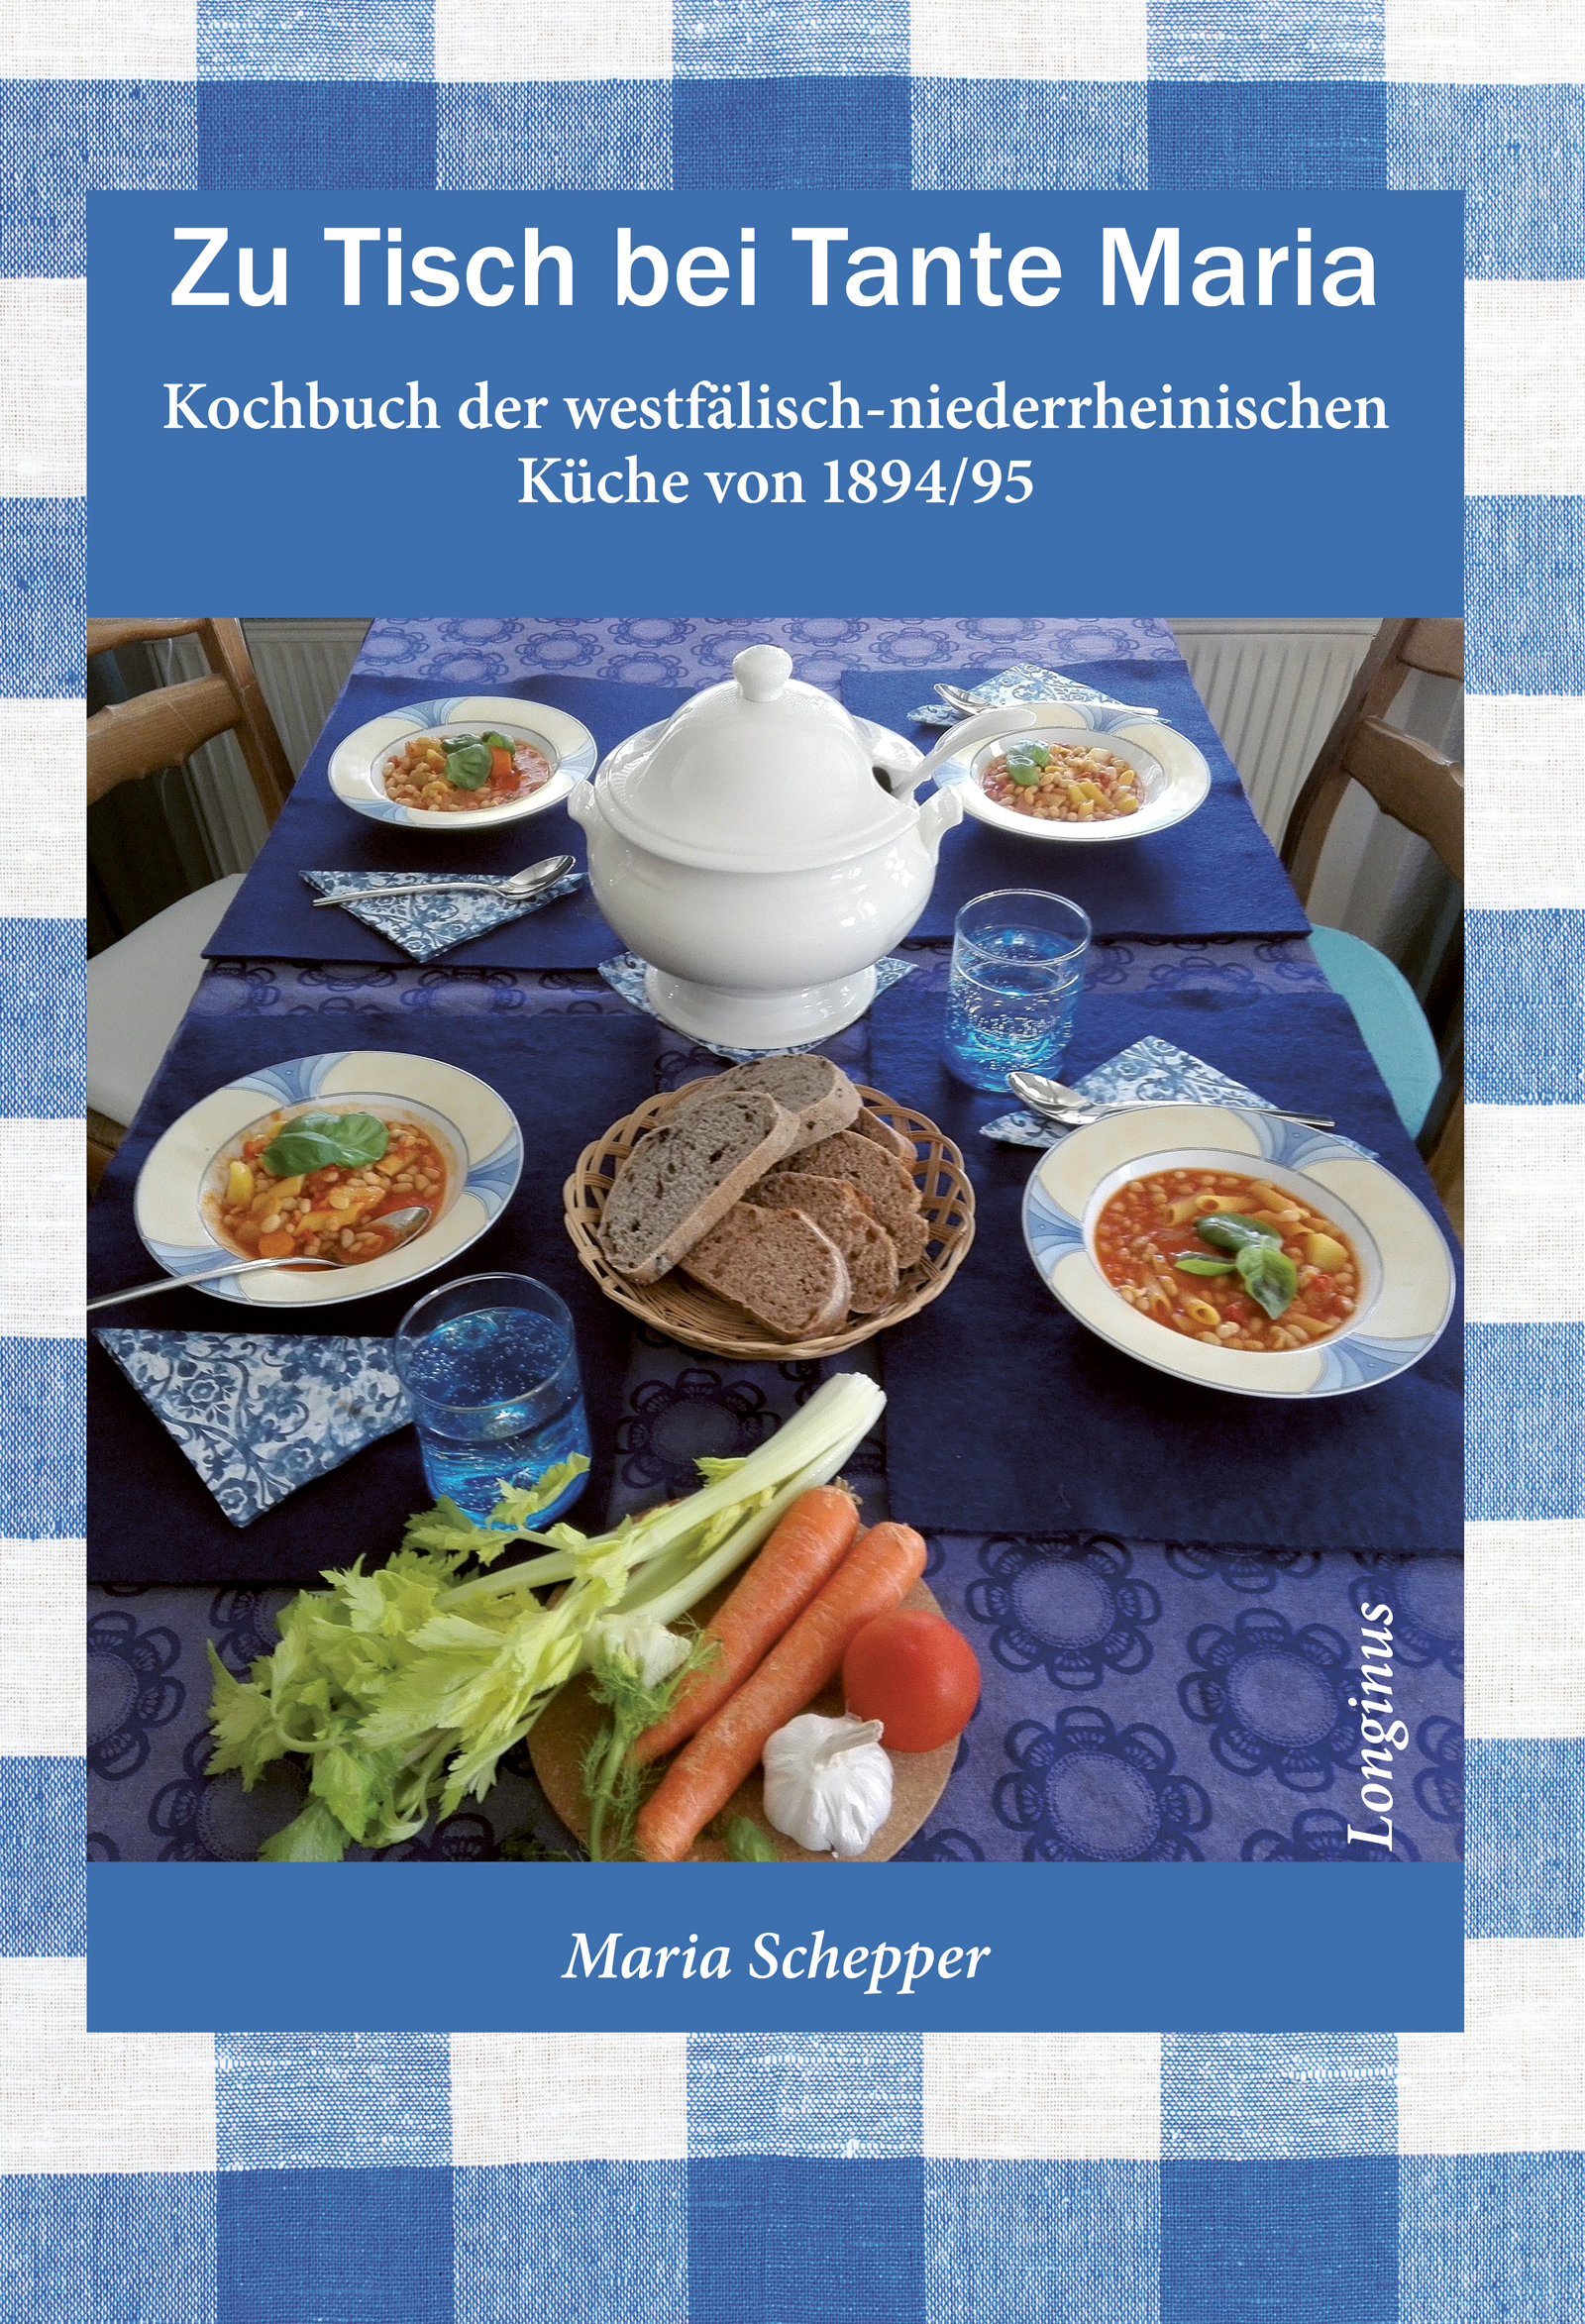 Zu Tisch bei Tante Maria - Kochbuch der westfälisch-niederrheinischen Küche von 1894/95